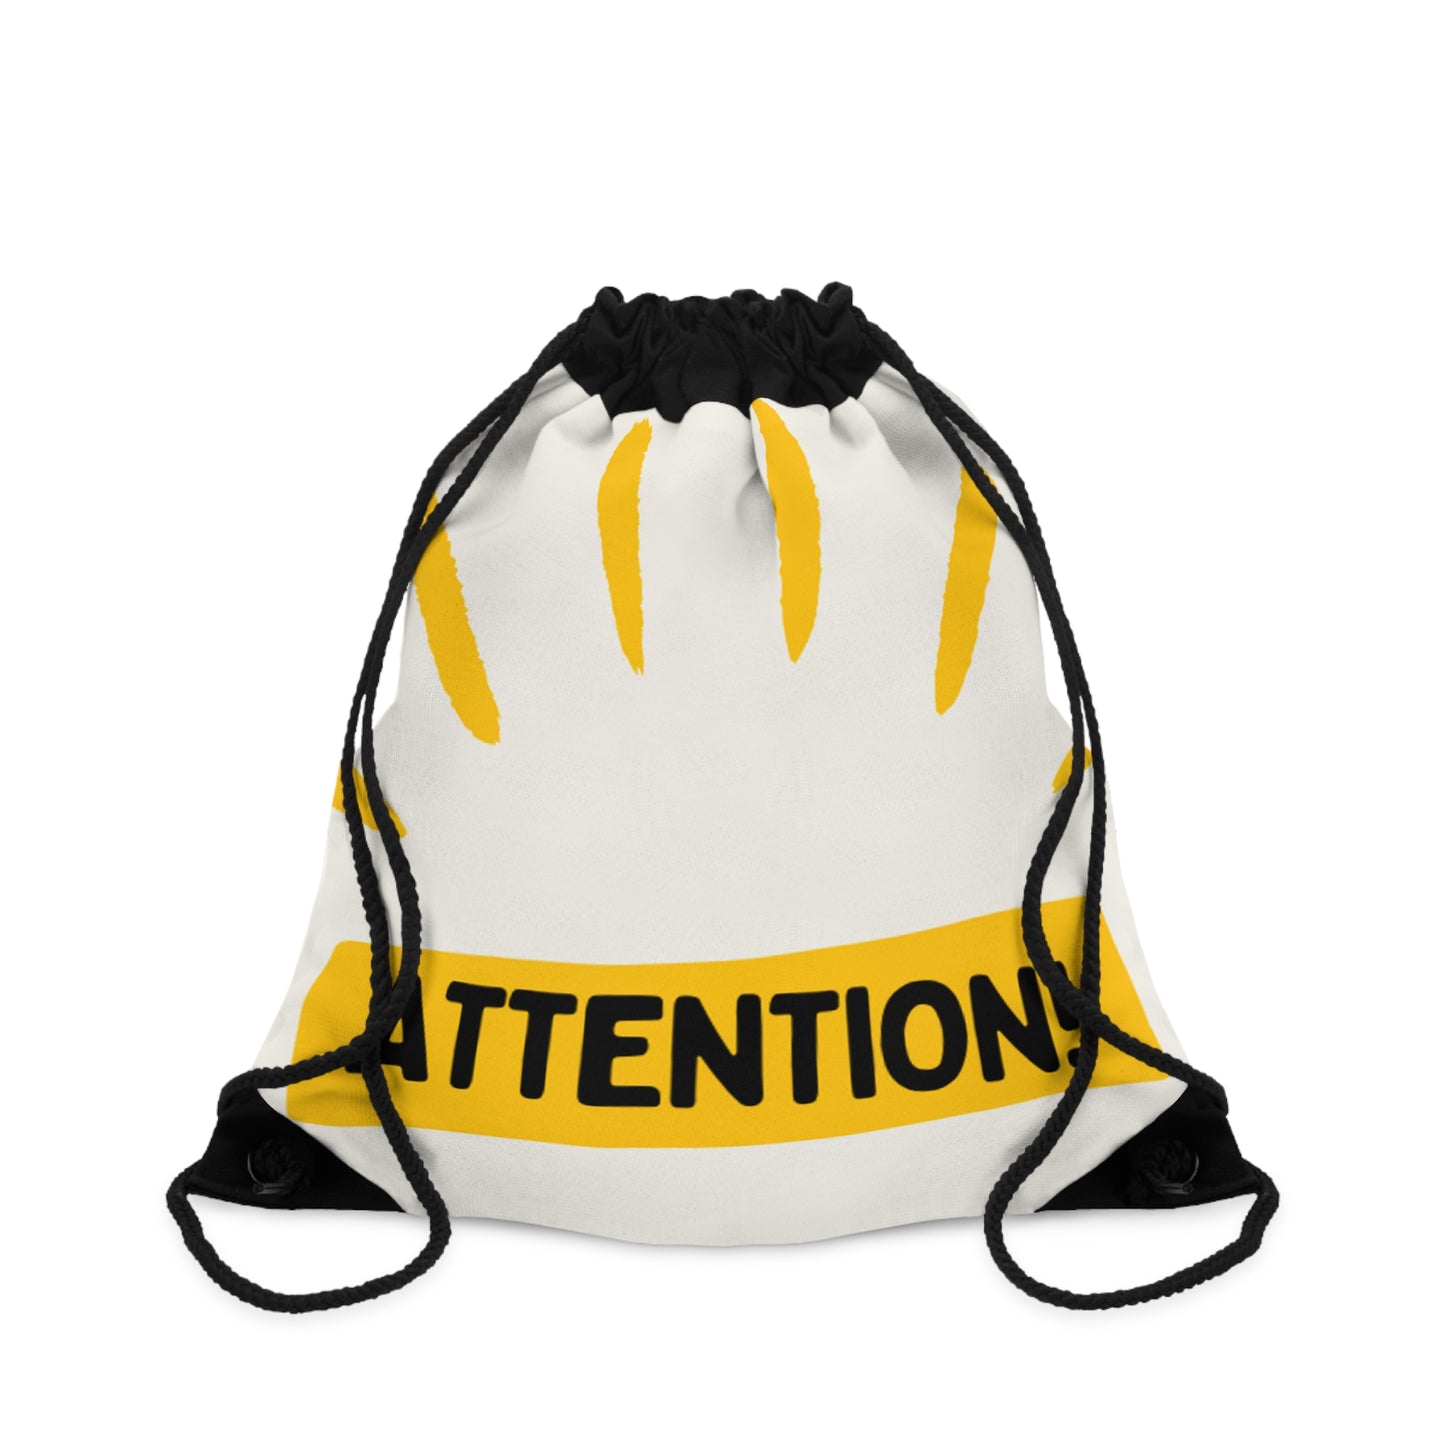 Drawstring Bag | Attention! - Ribooa